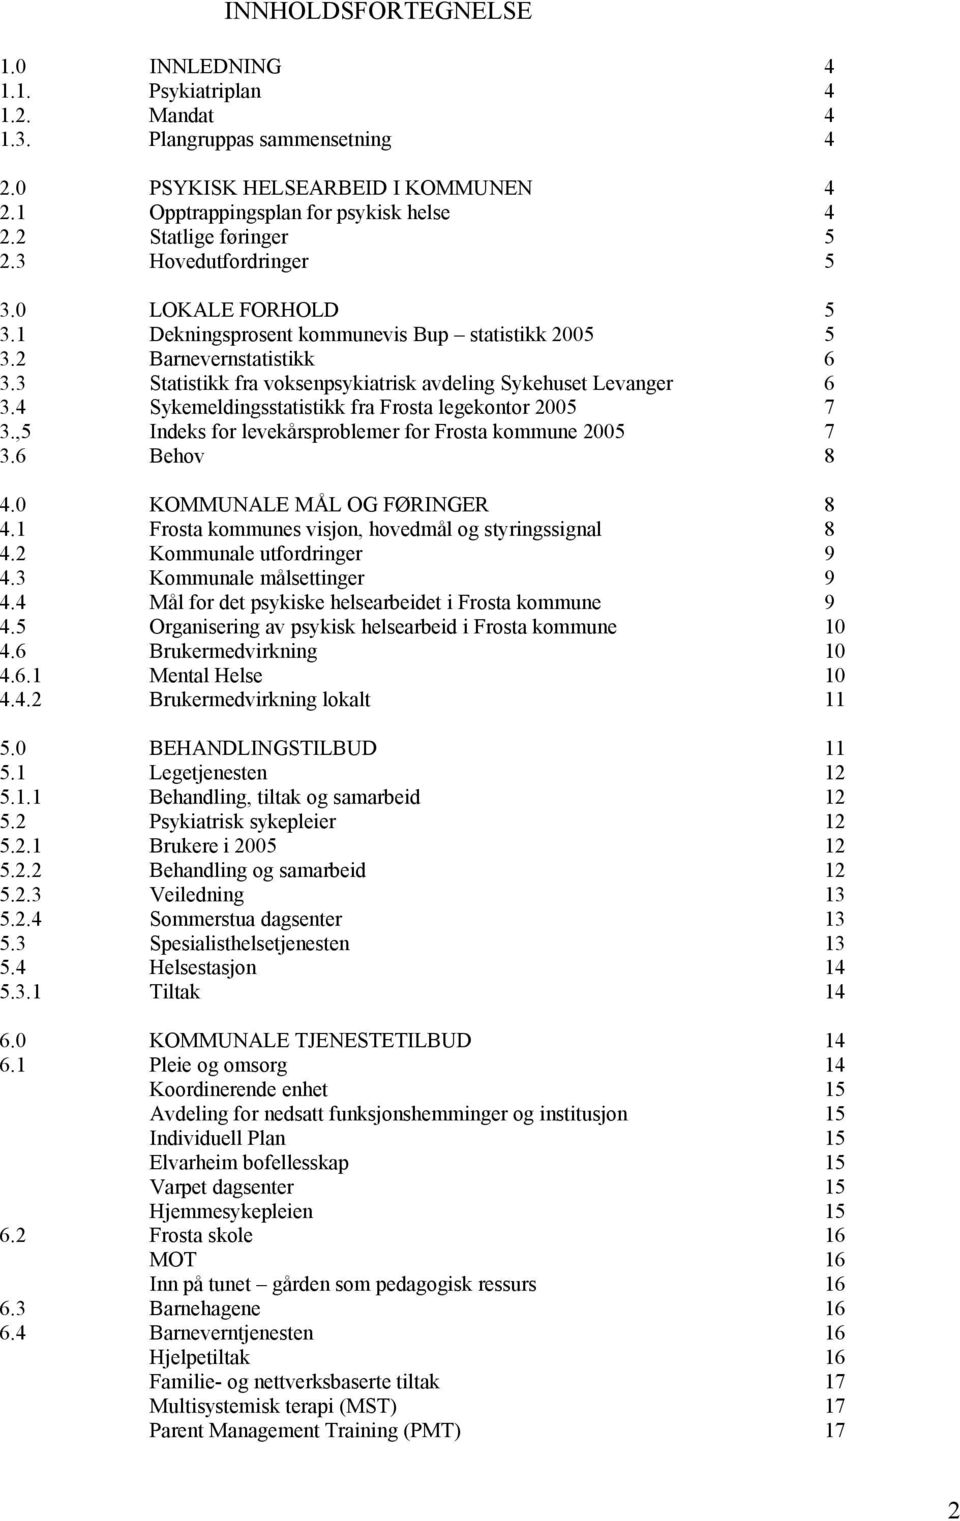 3 Statistikk fra voksenpsykiatrisk avdeling Sykehuset Levanger 6 3.4 Sykemeldingsstatistikk fra Frosta legekontor 2005 7 3.,5 Indeks for levekårsproblemer for Frosta kommune 2005 7 3.6 Behov 8 4.